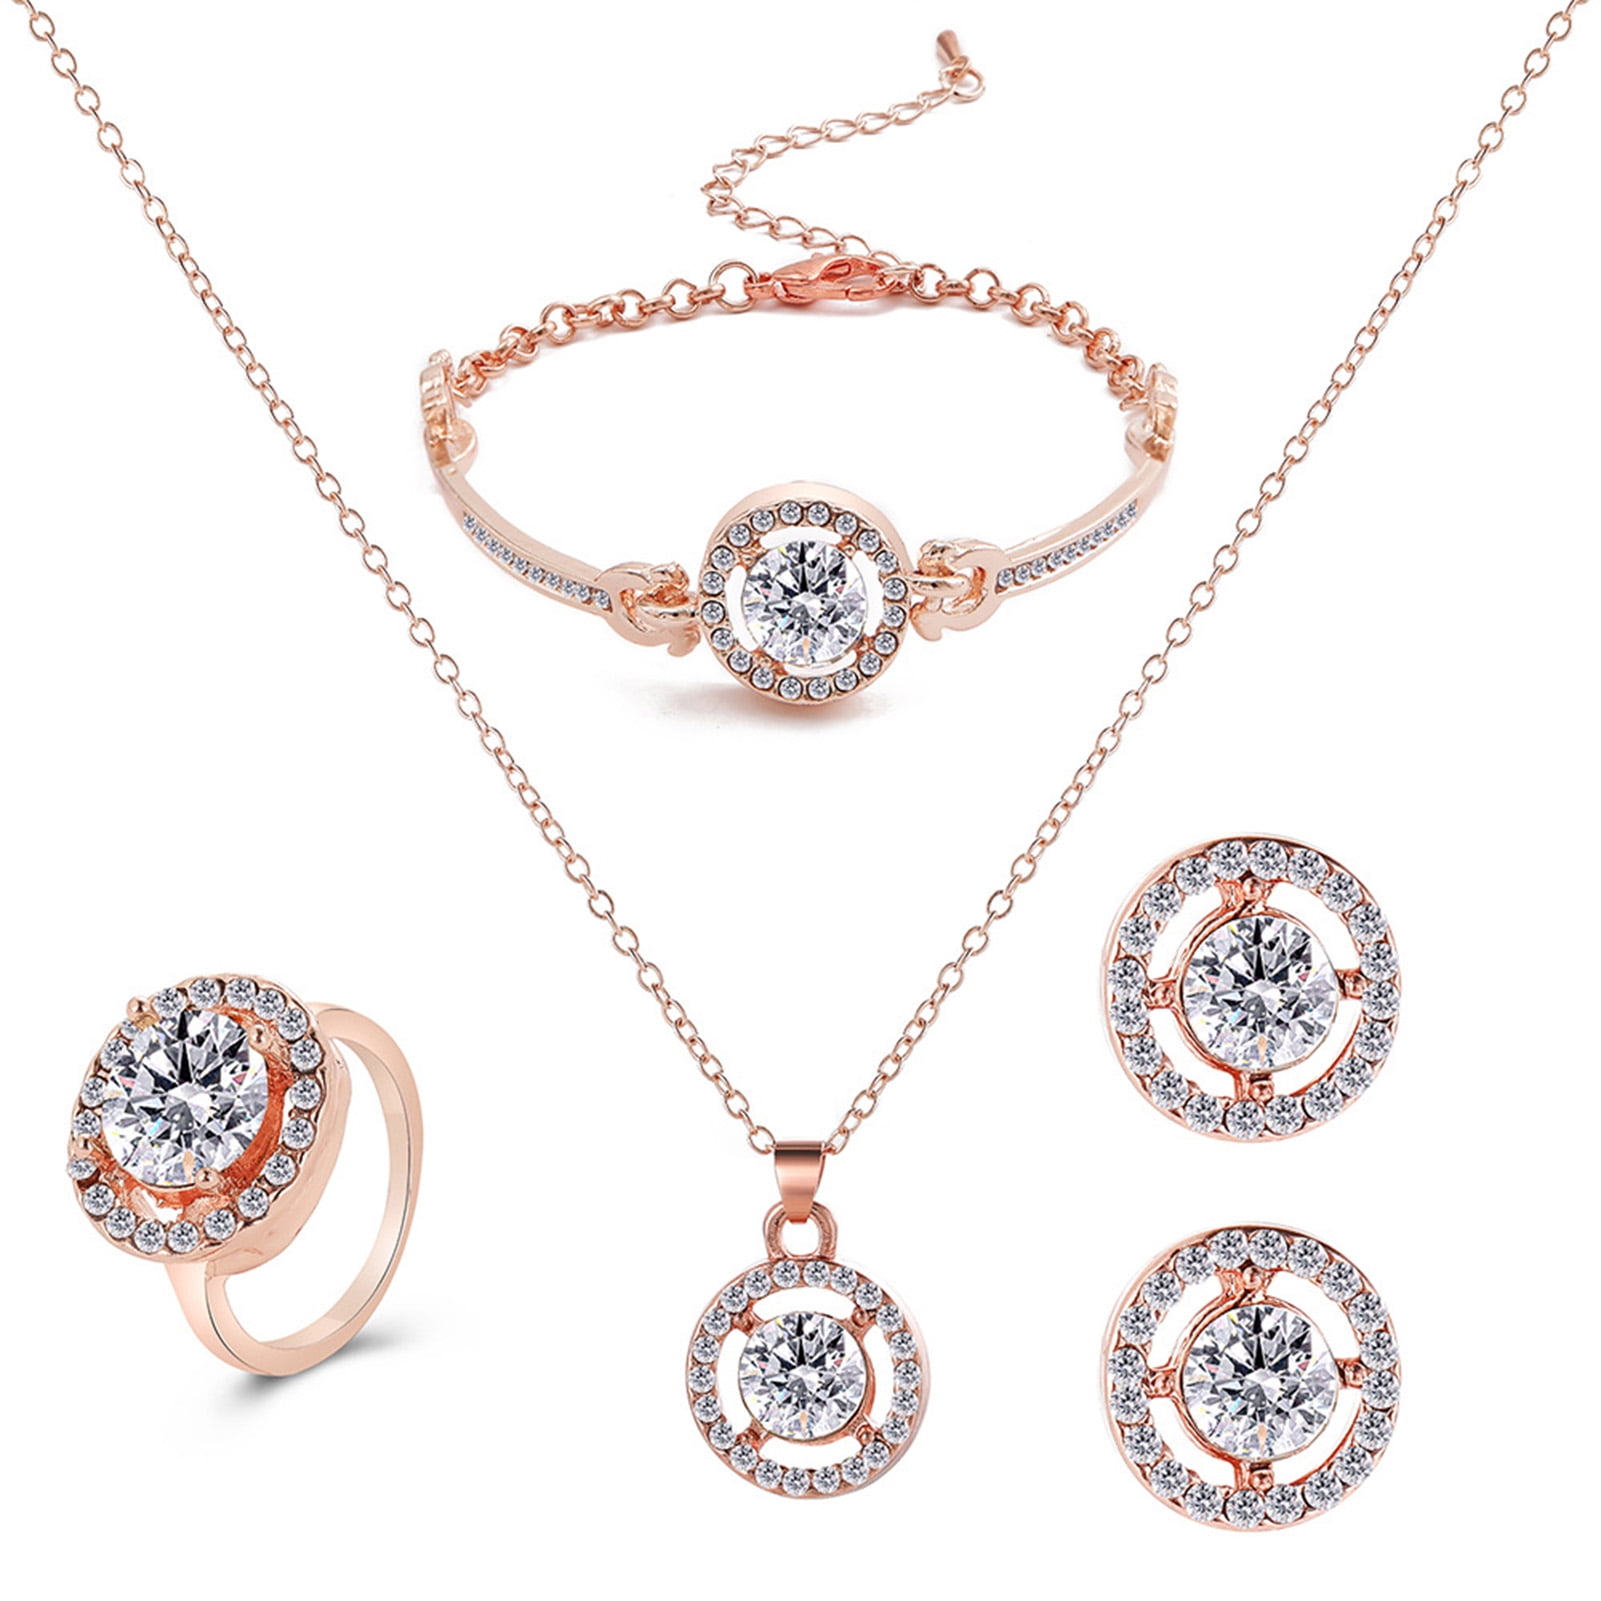 Rocksbox: Ari Heart Necklace & Earrings Gift Set by Kendra Scott